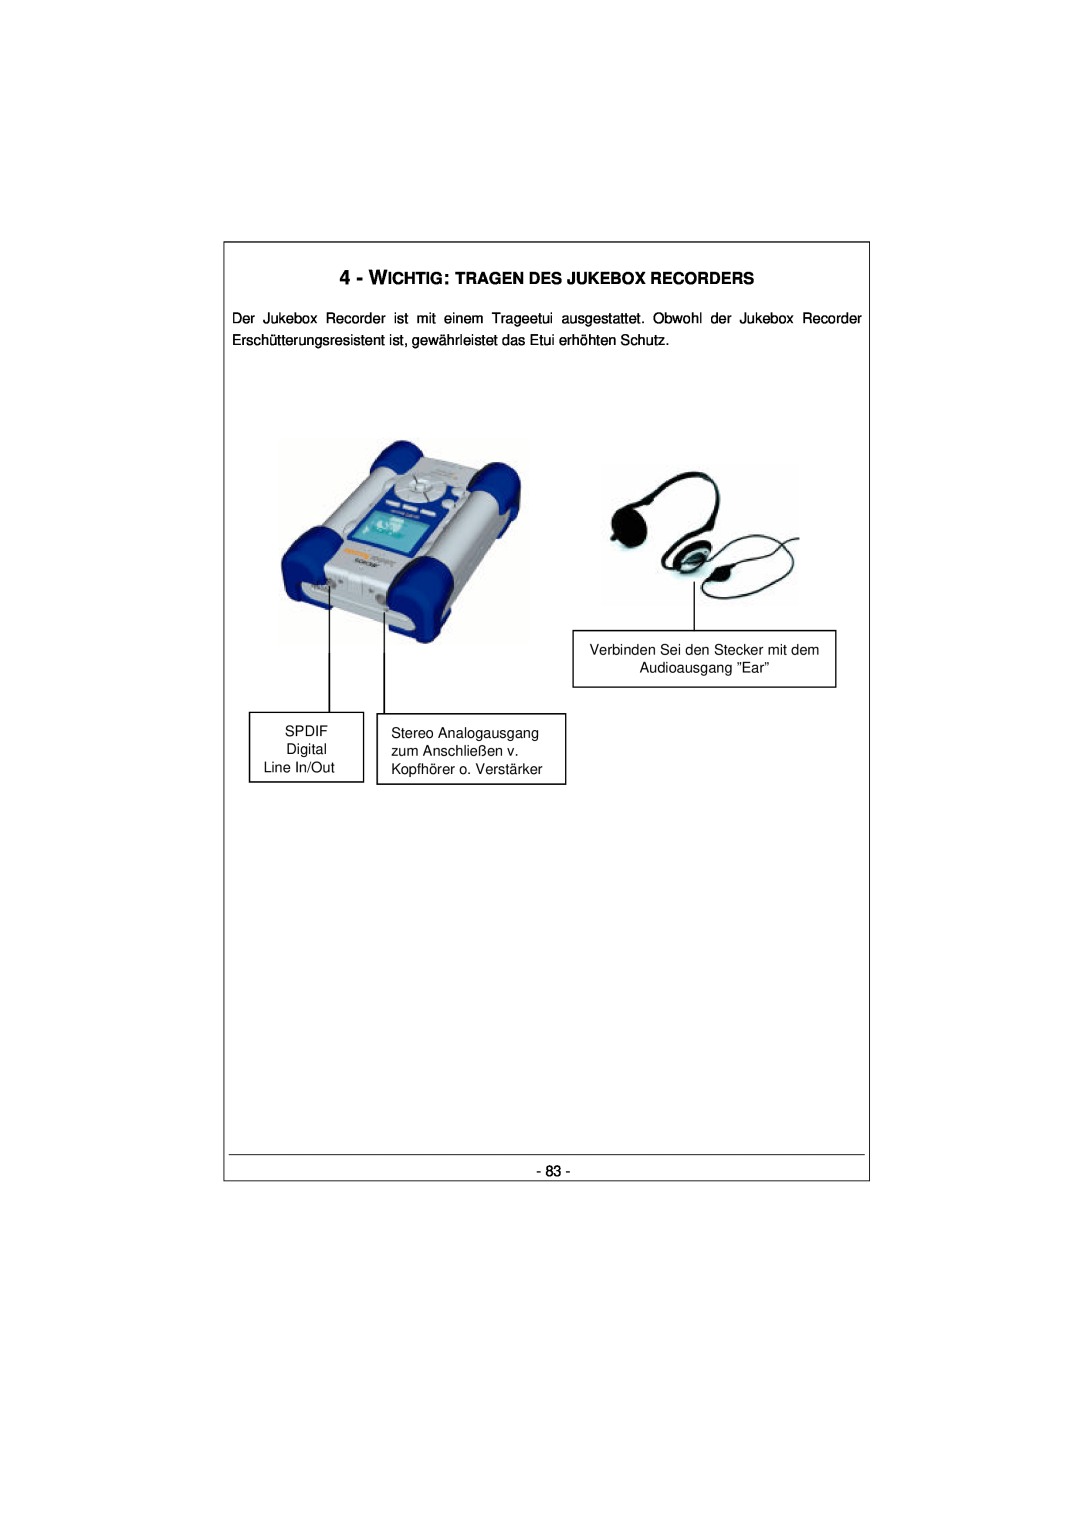 Archos 100628 manual Wichtig: Tragen Des Jukebox Recorders, SPDIF Digital Line In/Out, Verbinden Sei den Stecker mit dem 